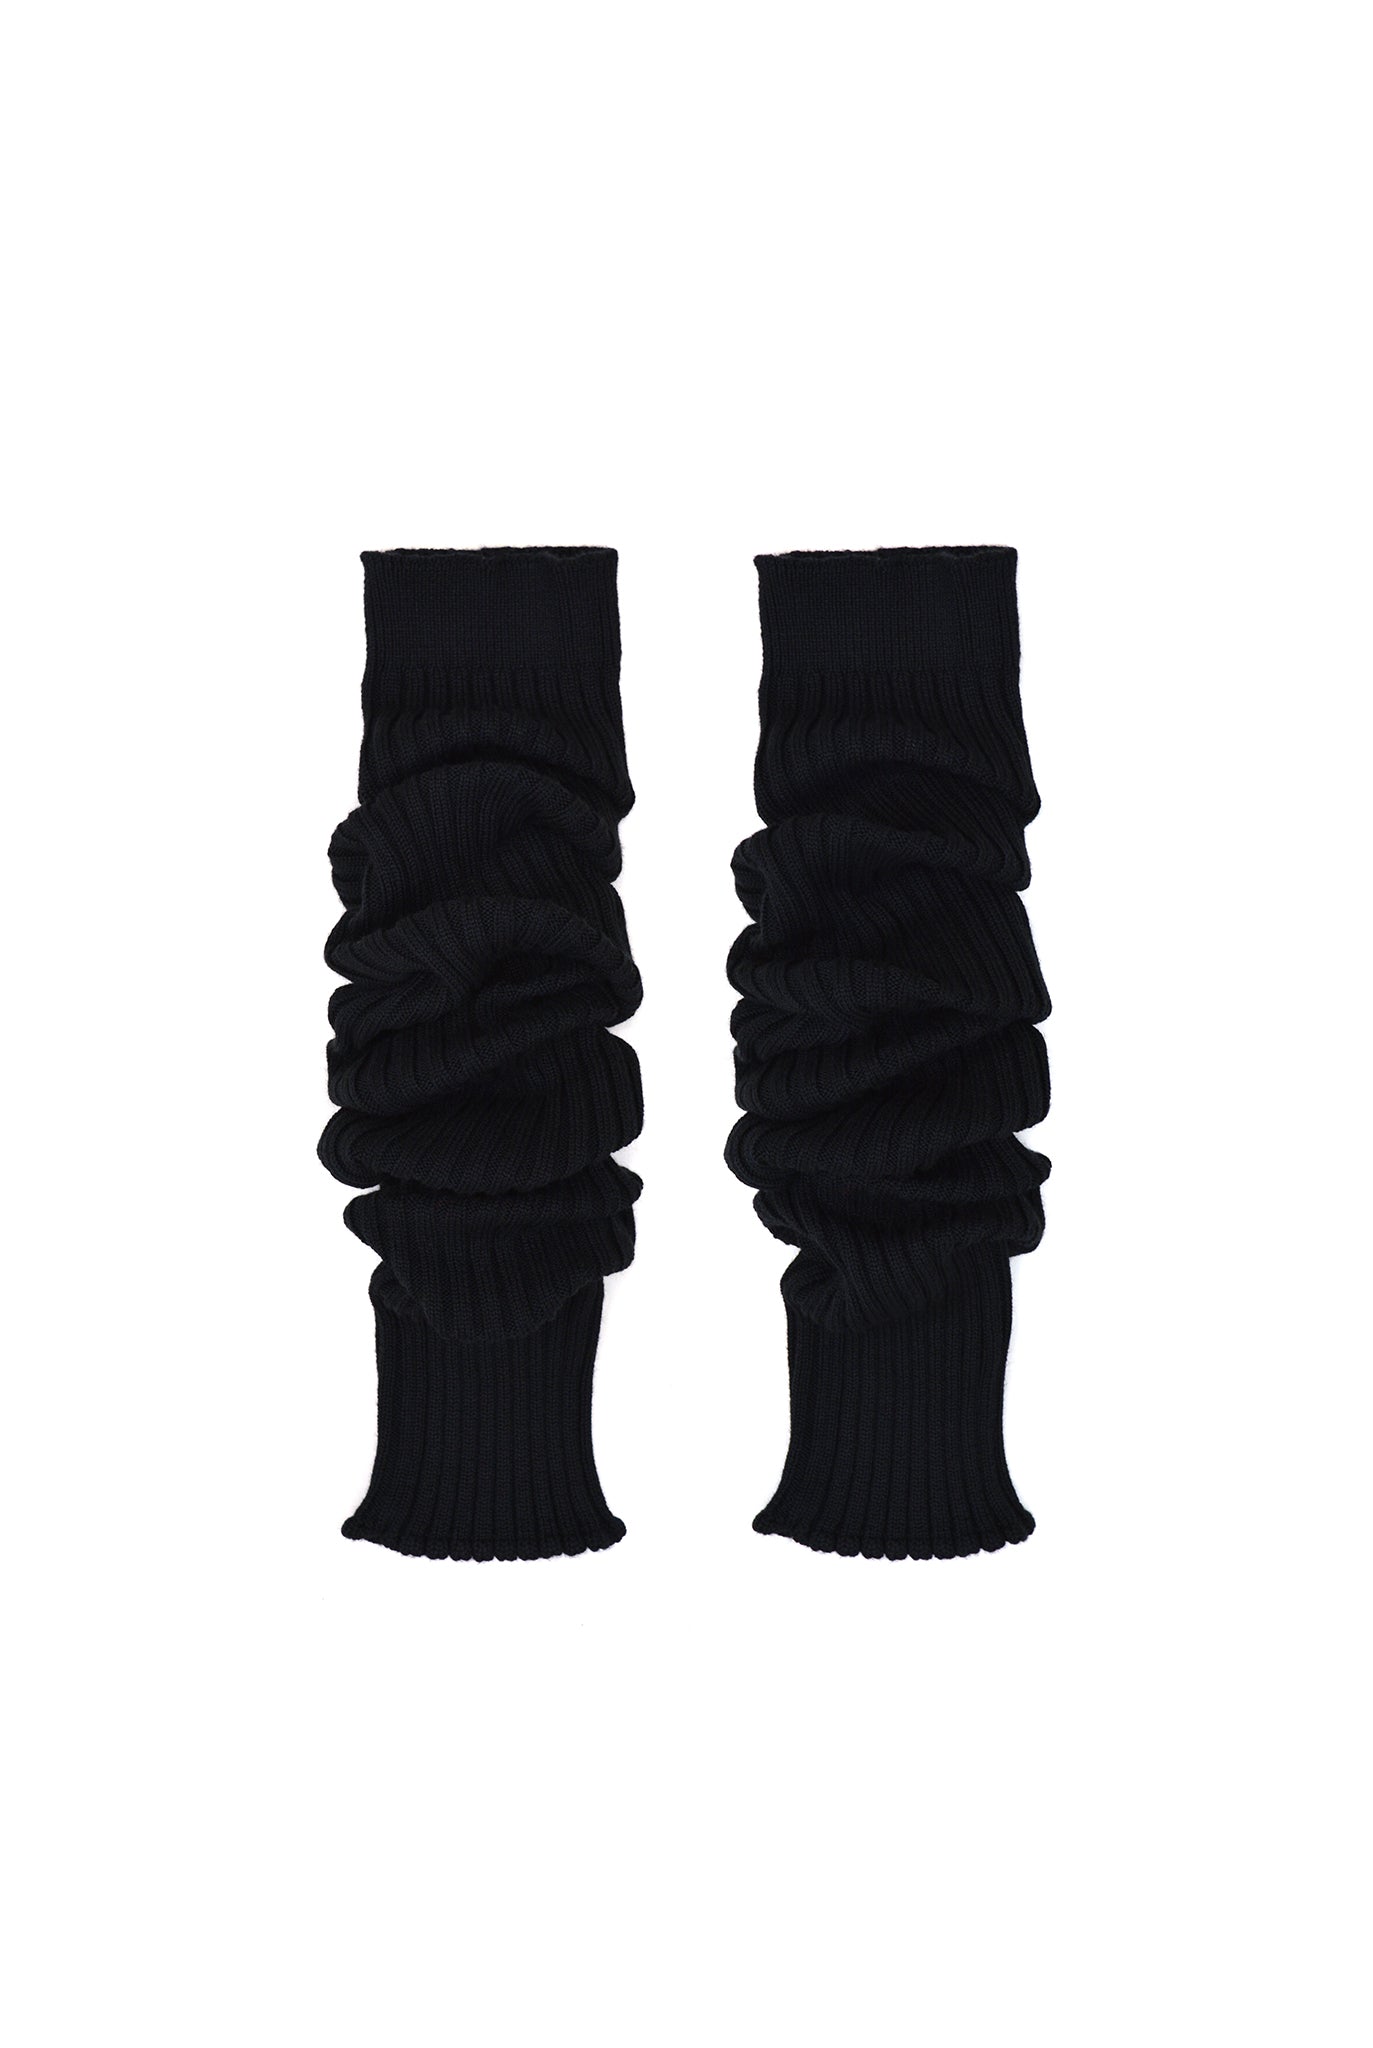 Doublet Leg Warmer - Black